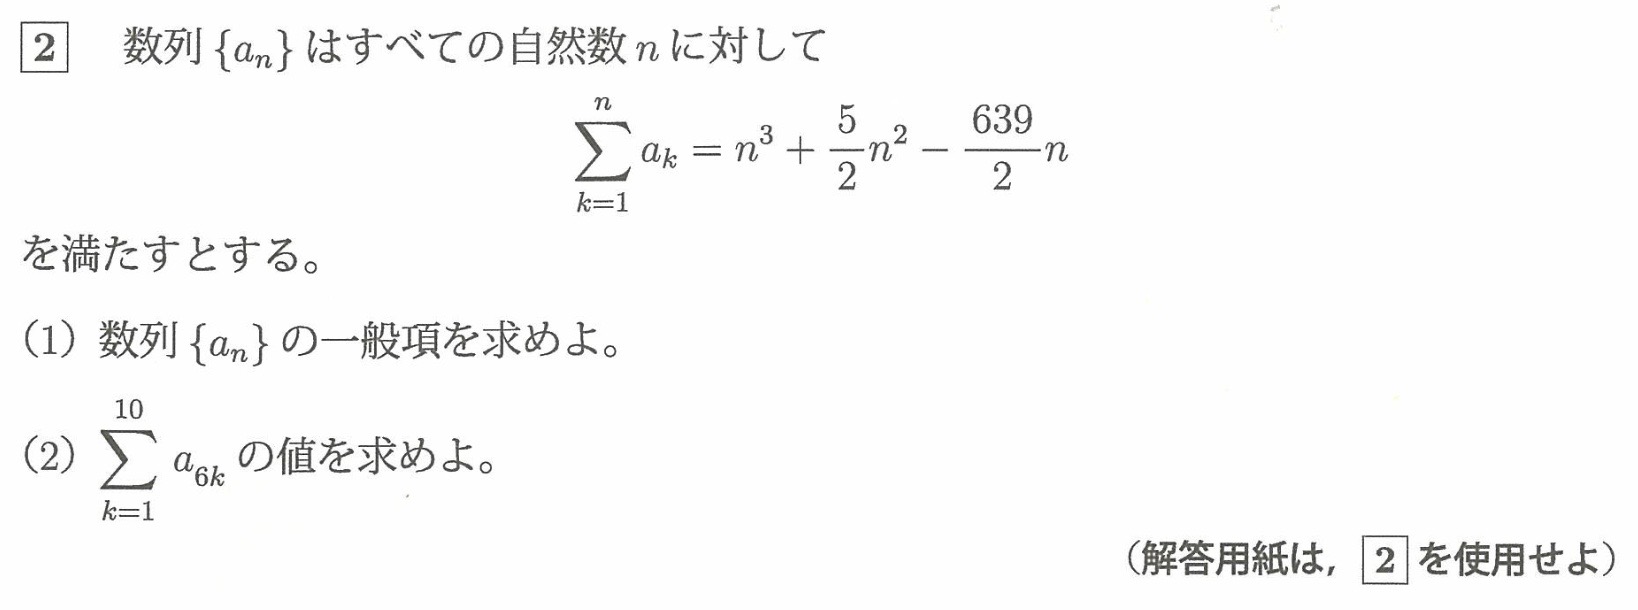 富山大学入試文系数学2022年(令和4年)過去問題